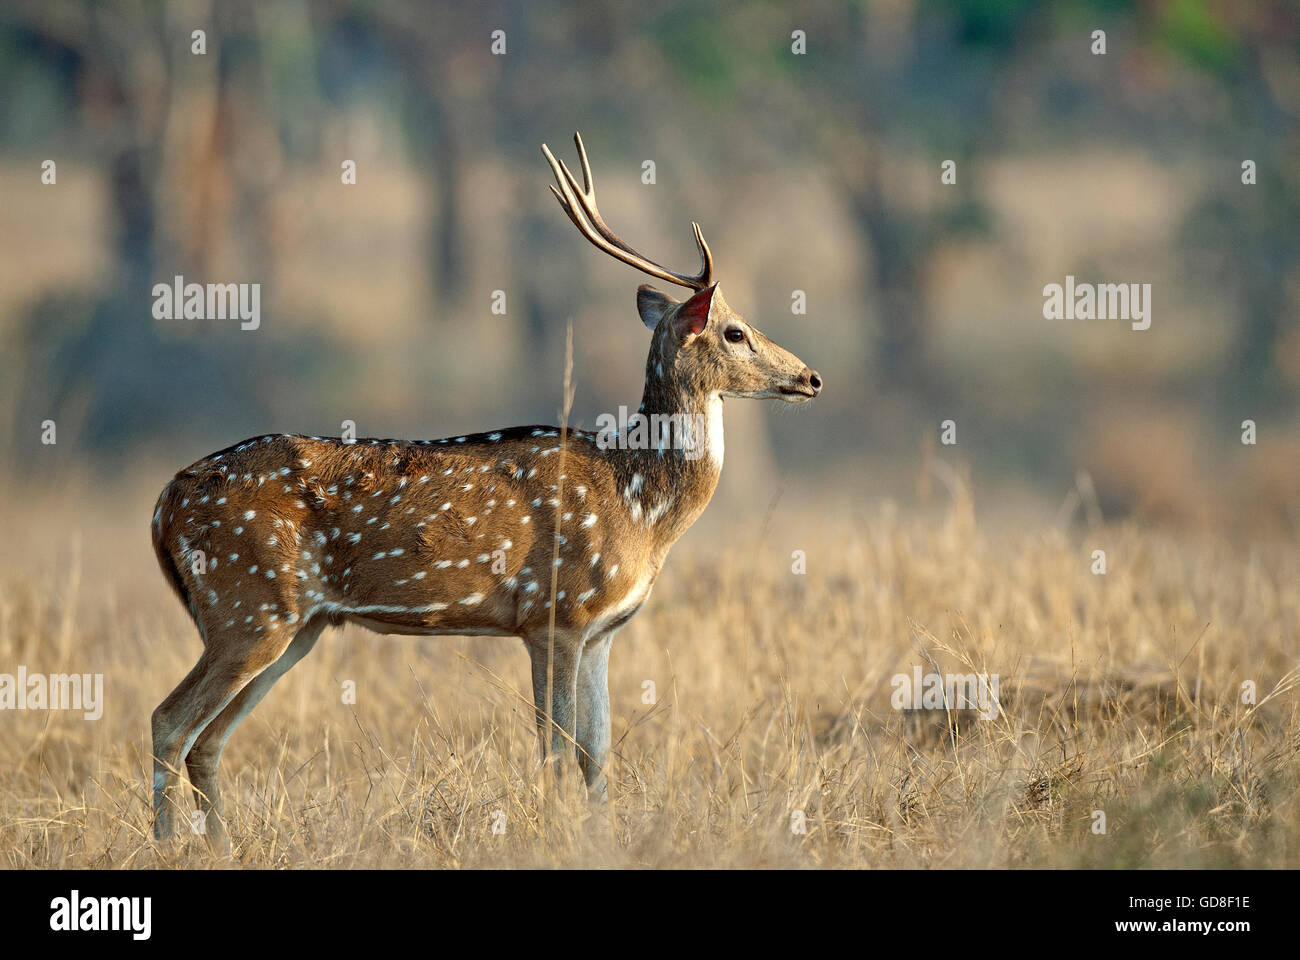 L'image de cerfs communs repèrés ( Axis axis ) a été prise dans le parc national de Bandavgarh, Inde Banque D'Images